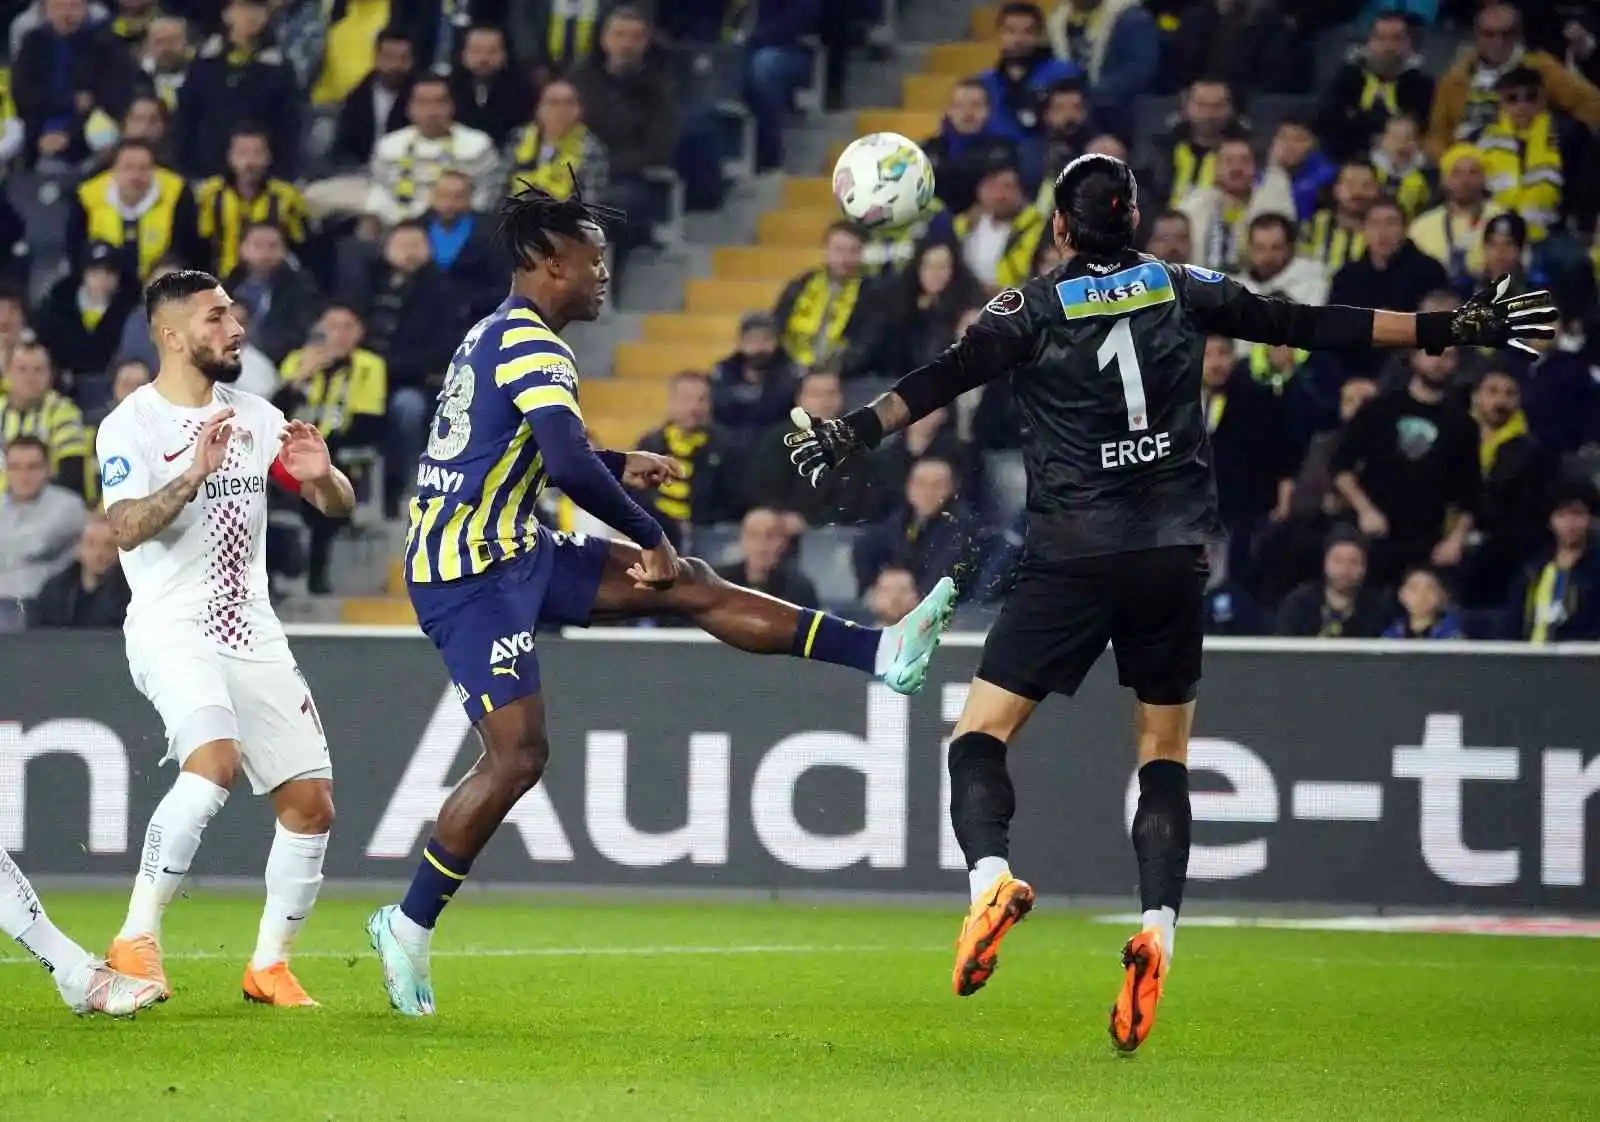 Spor Toto Süper Lig: Fenerbahçe: 1 - Hatayspor: 0 (Maç devam ediyor)
